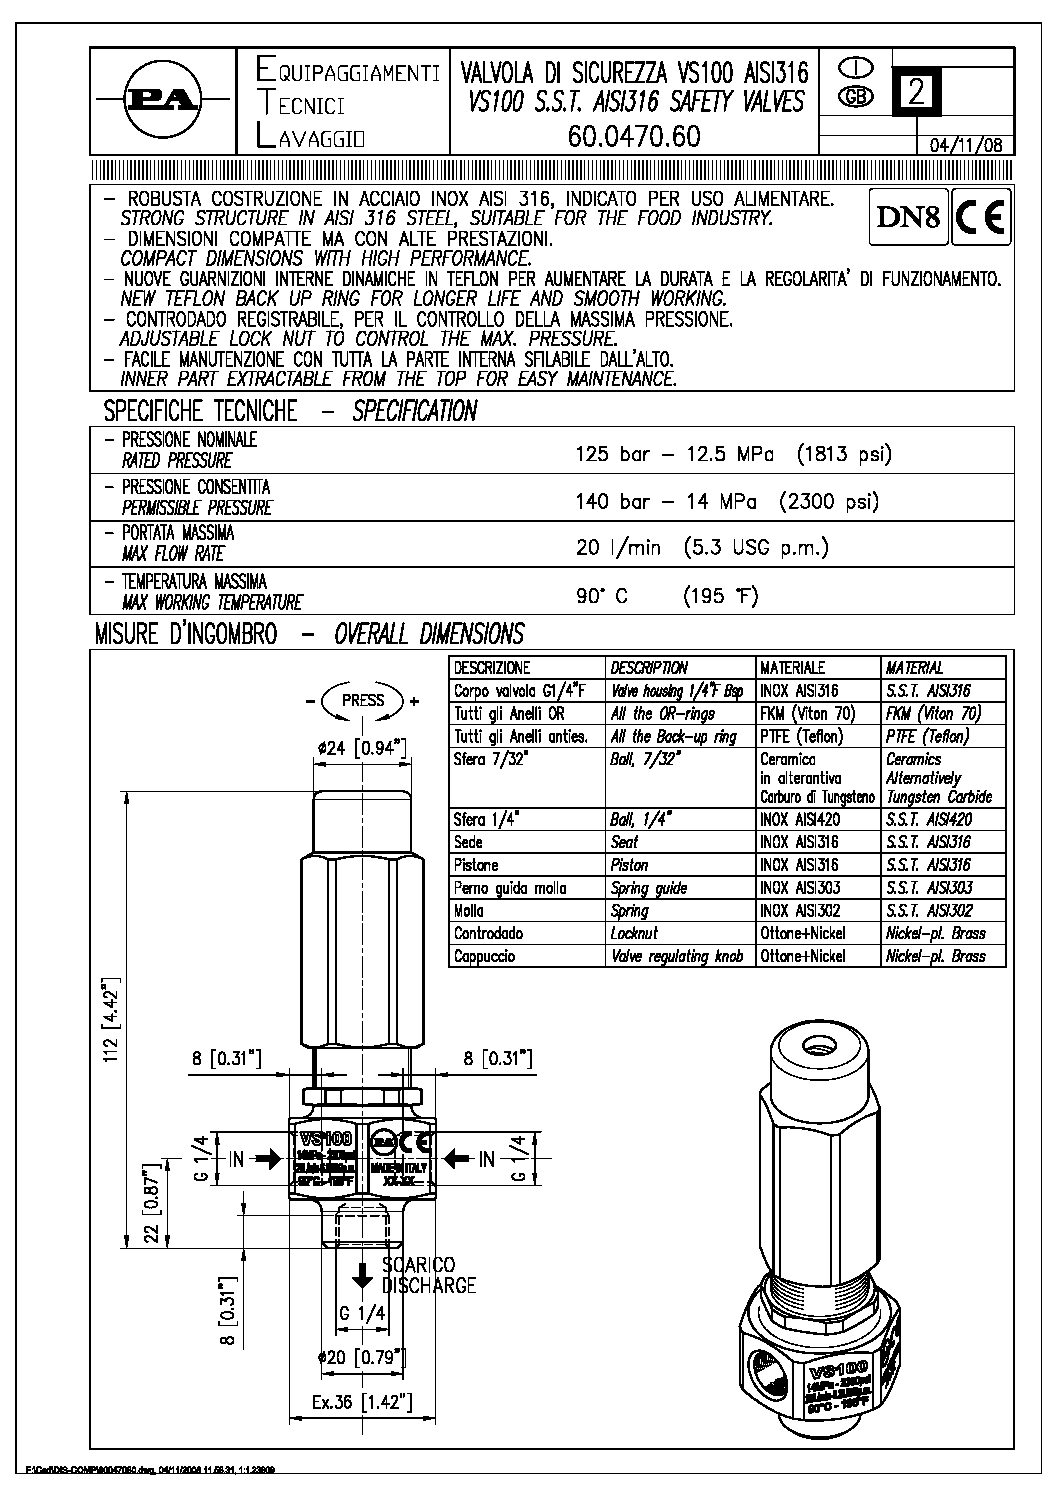 PA VS100 safety valve technical manual